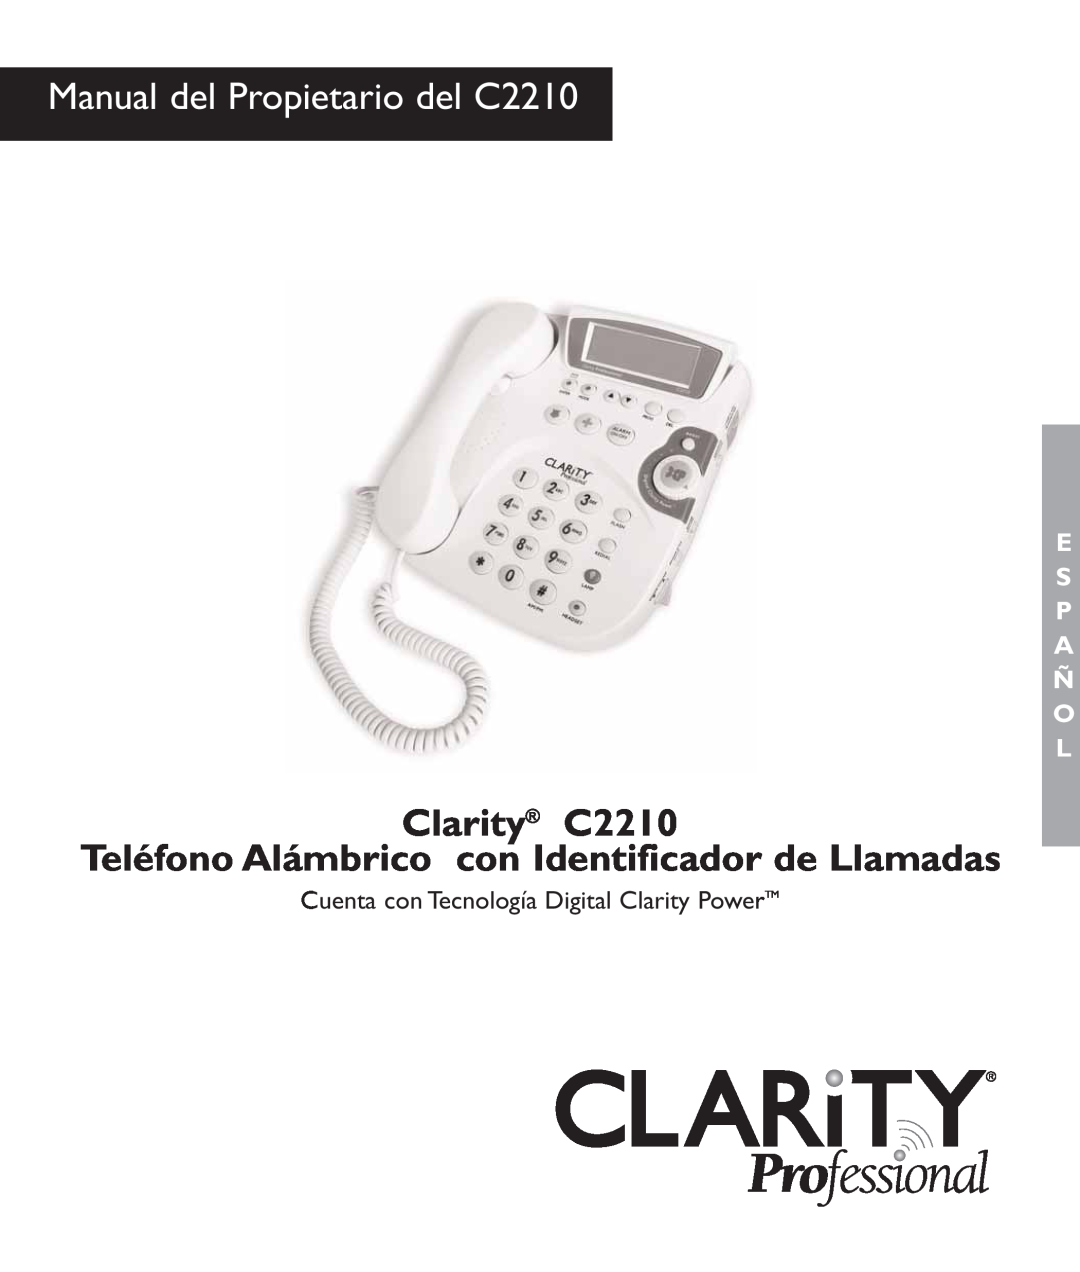 Clarity c2210 manual Manual del Propietario del C2210, Clarity C2210 Teléfono Alámbrico con Identificador de Llamadas 